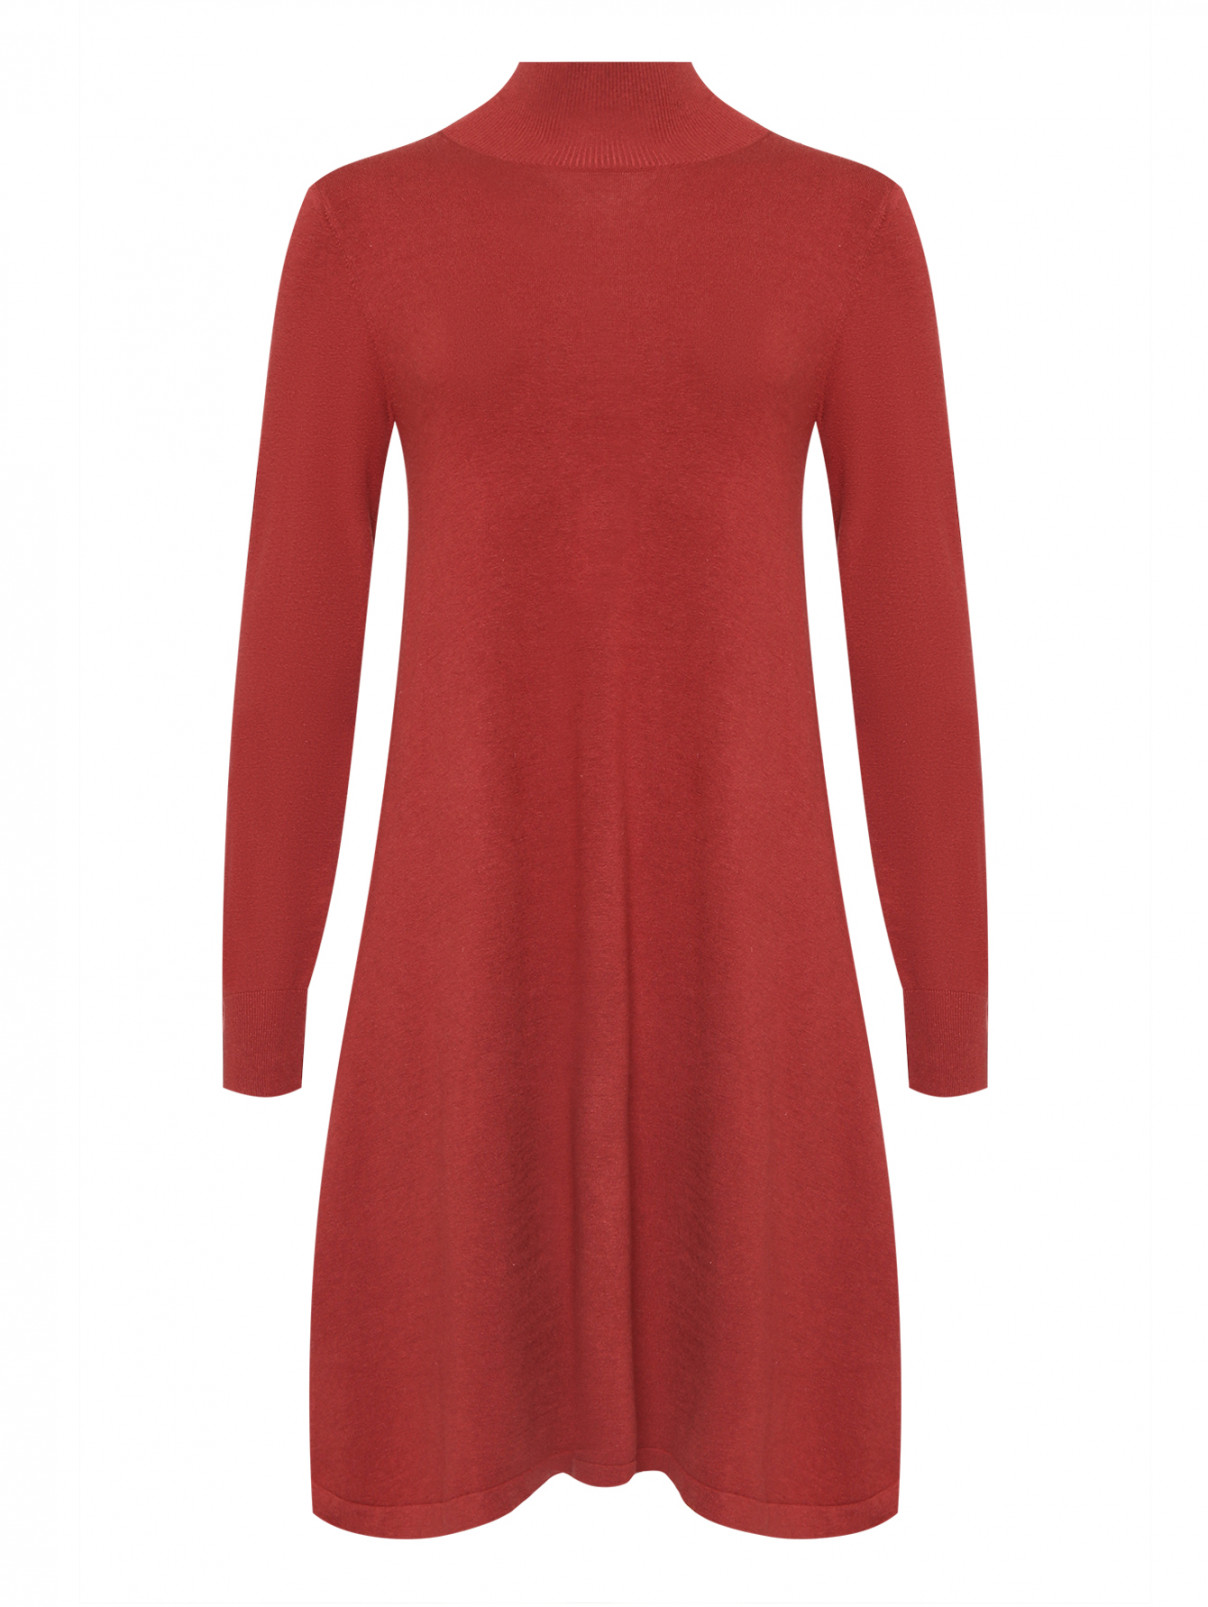 Трикотажное платье из шелка и шерсти Weekend Max Mara  –  Общий вид  – Цвет:  Красный